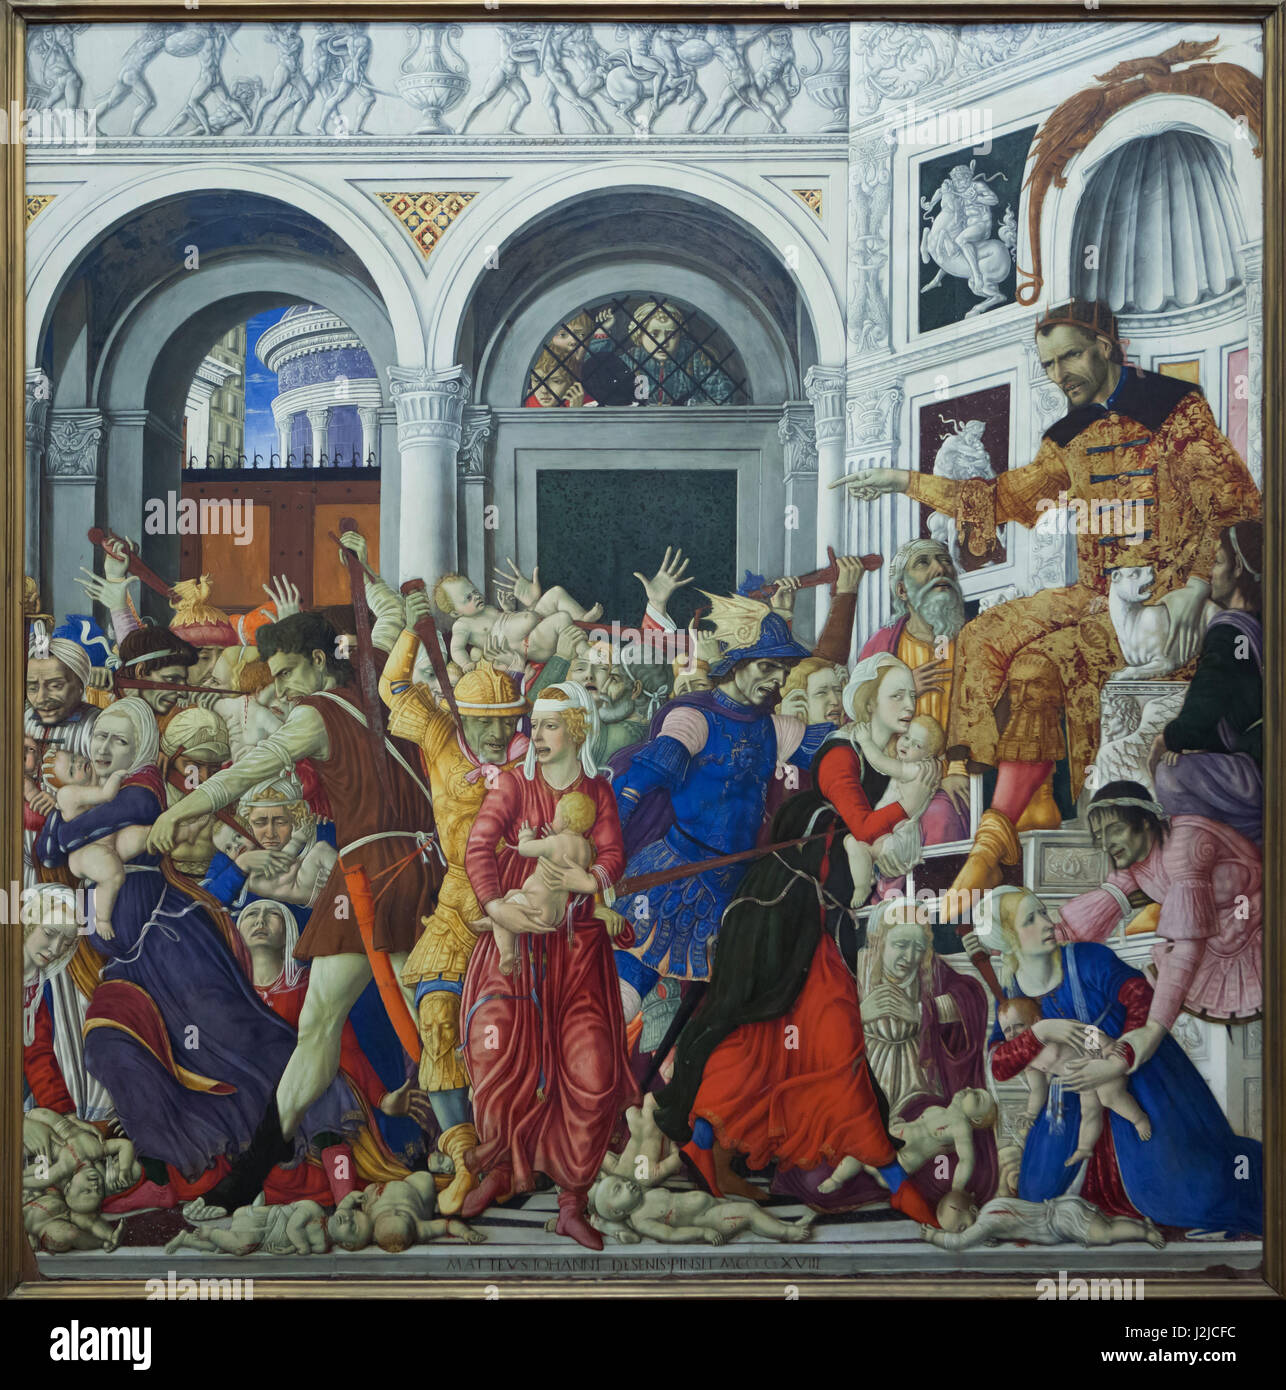 Gemälde "Massaker der unschuldigen" von italienischen Renaissance-Maler Matteo di Giovanni (1481-1488) auf dem Display in das Museo di Capodimonte in Neapel, Kampanien, Italien. Stockfoto